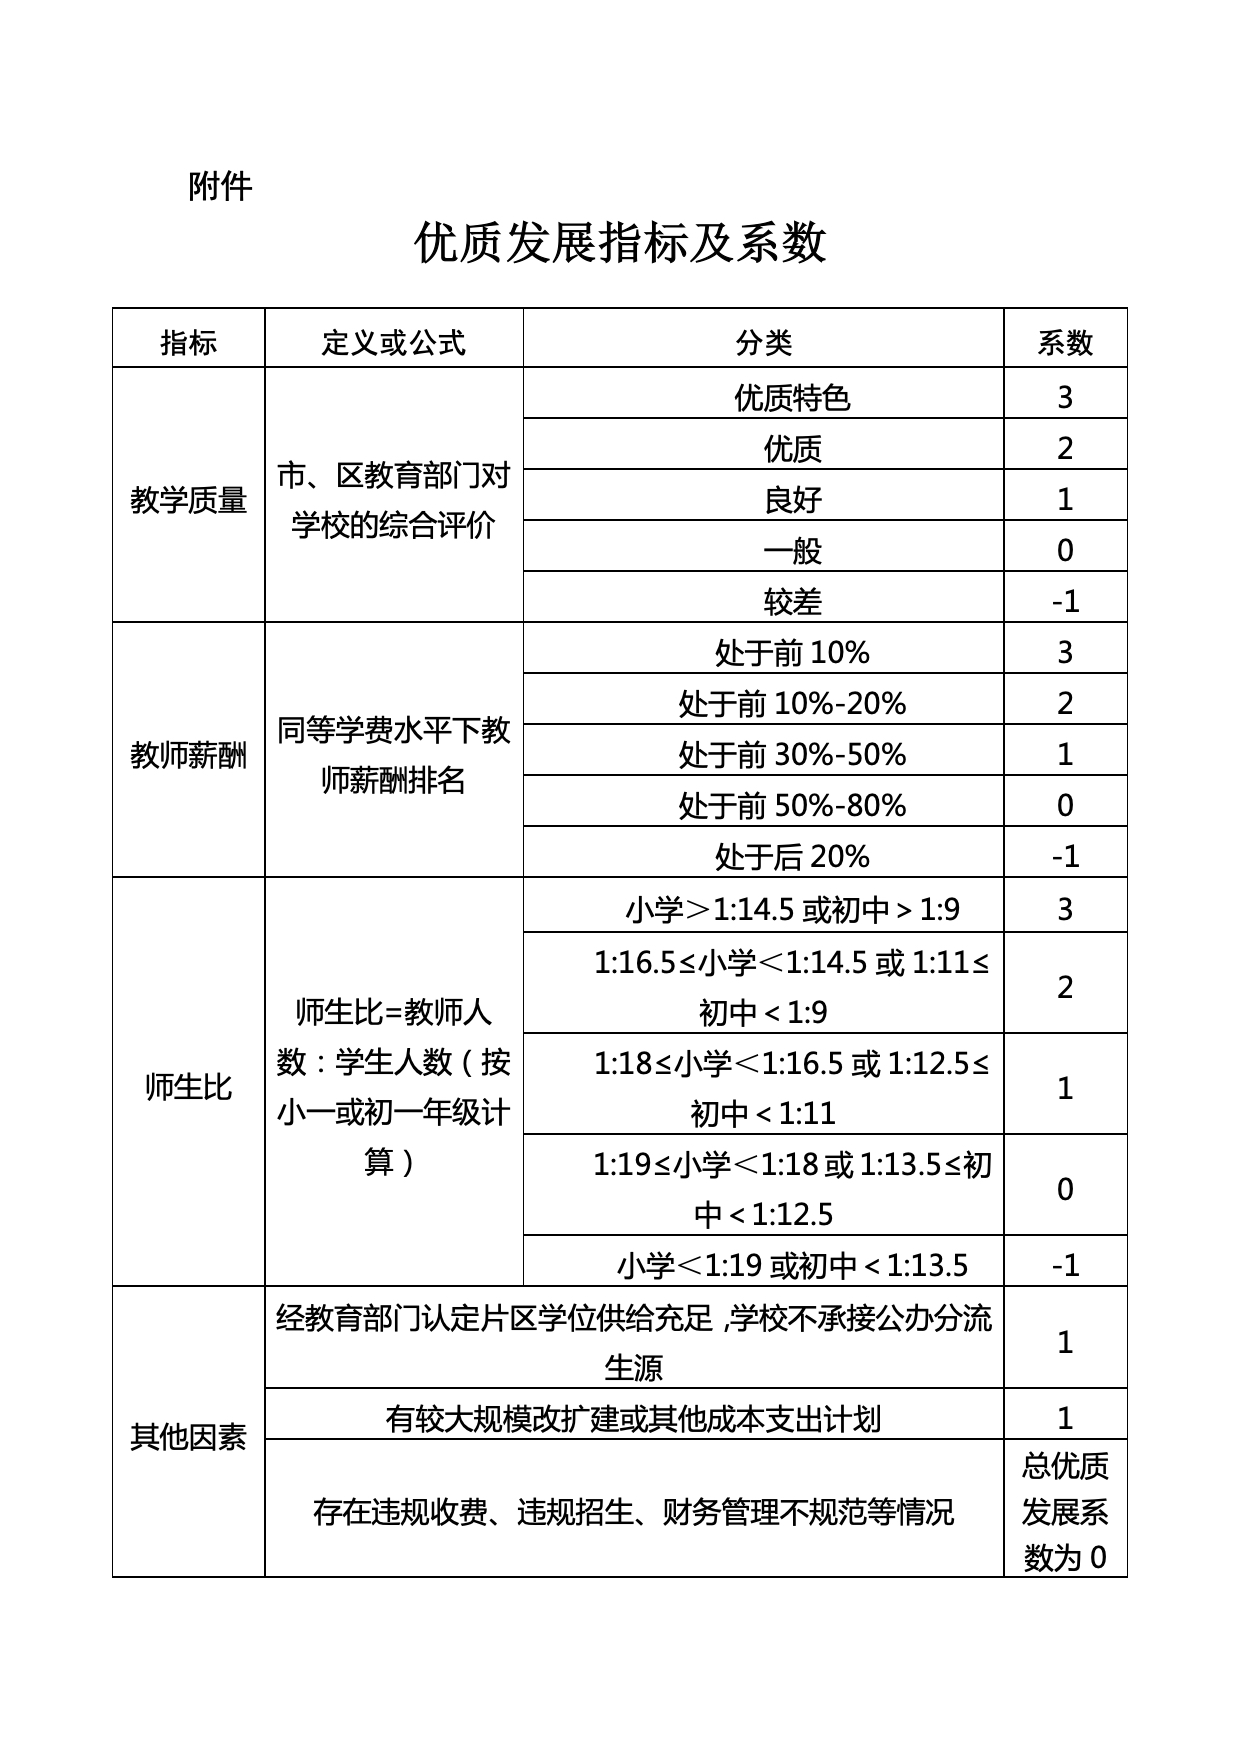 附件1：深圳市民办义务教育收费管理办法（征求意见稿）.jpg